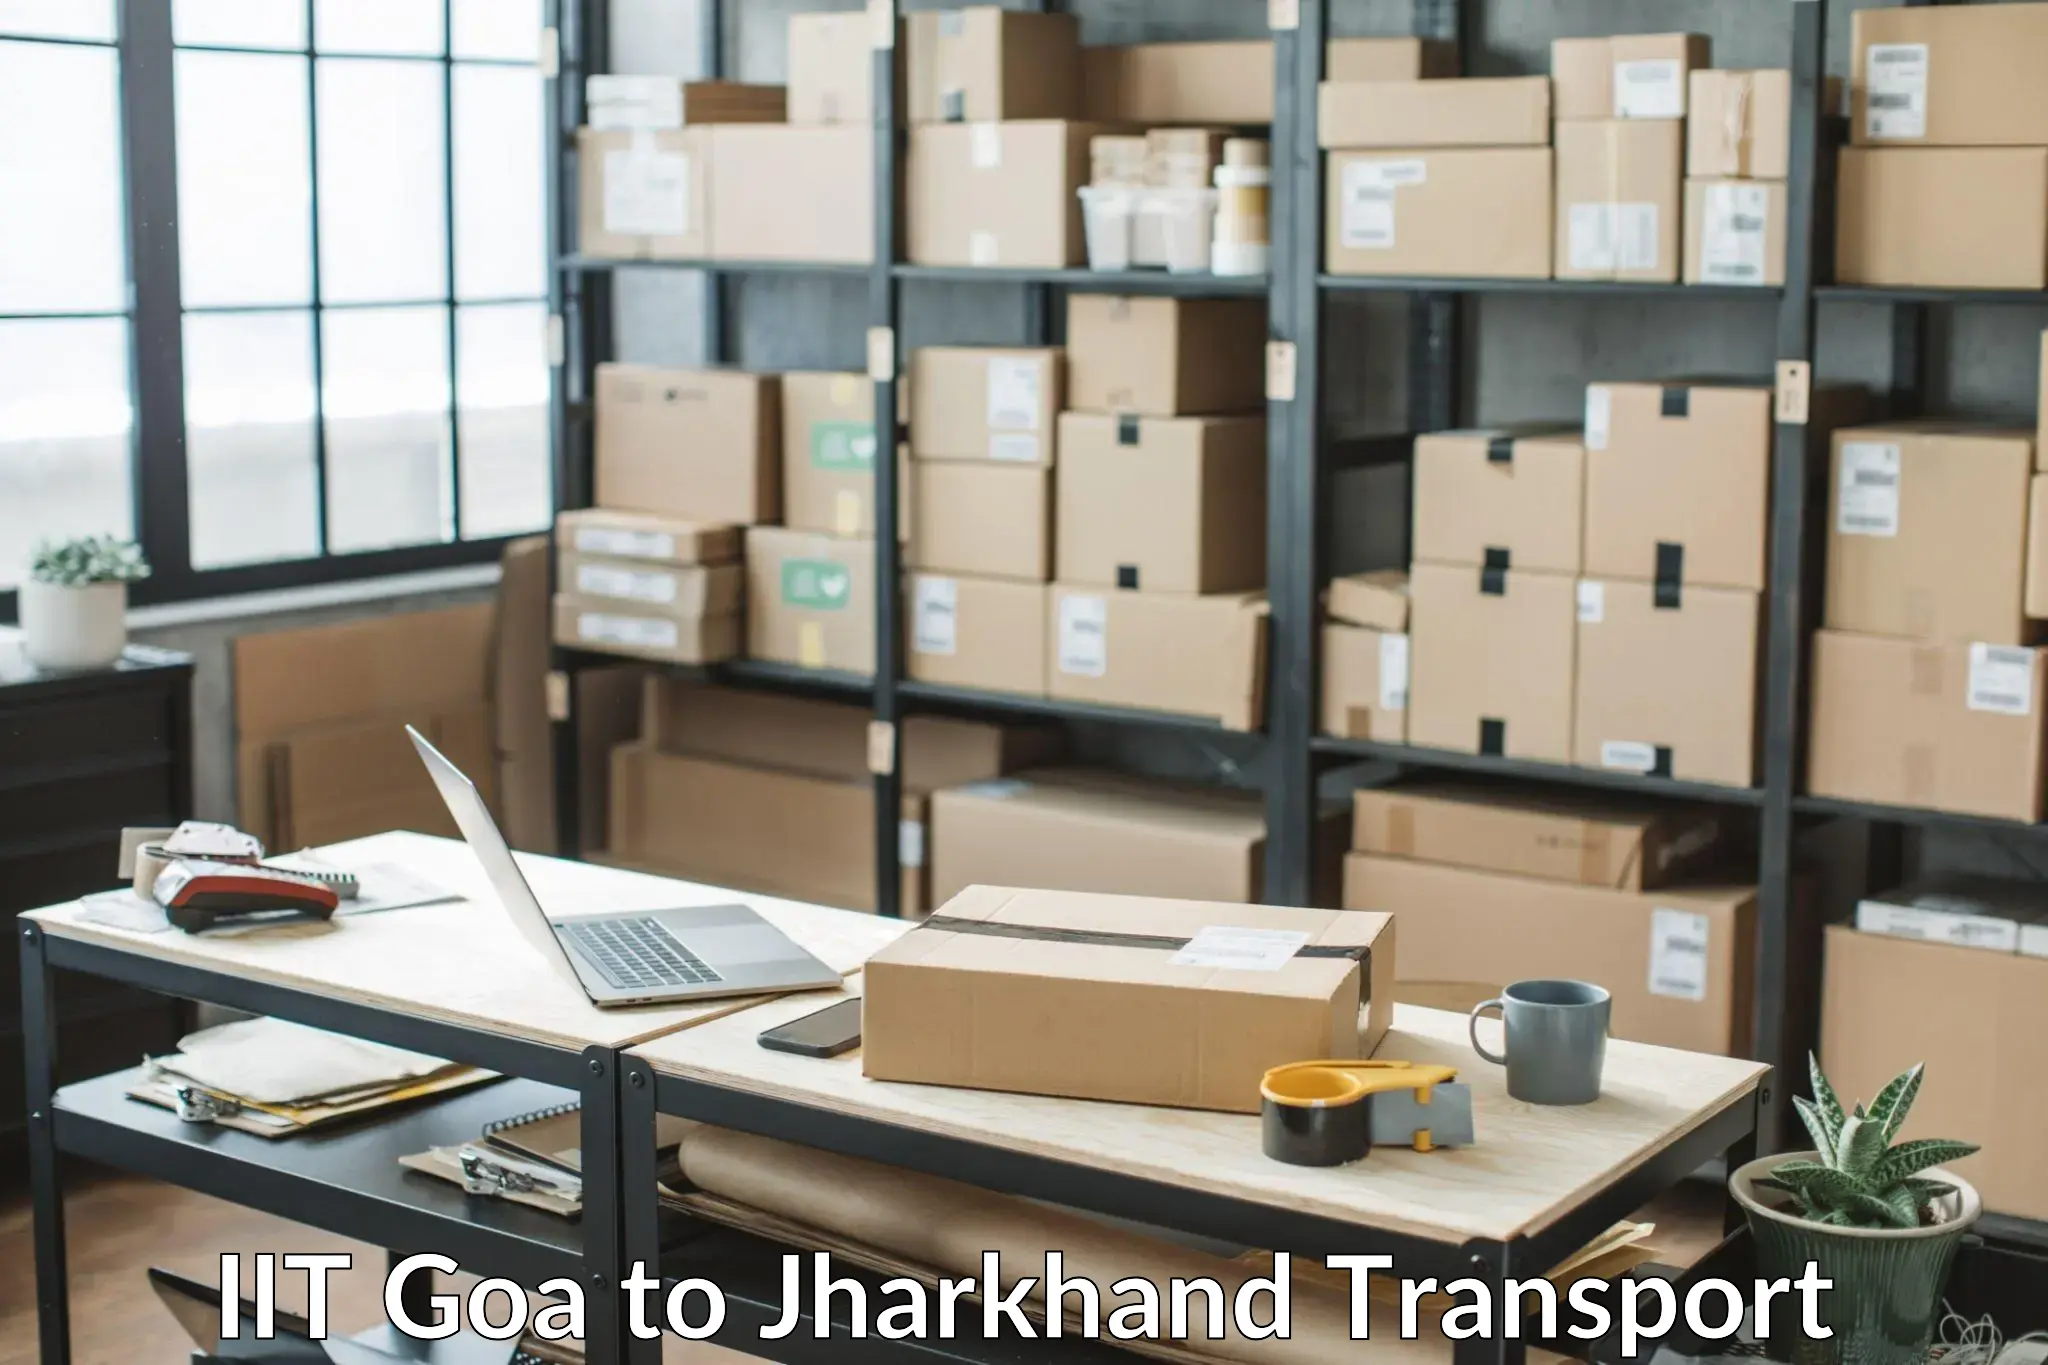 Nearest transport service in IIT Goa to Chandil